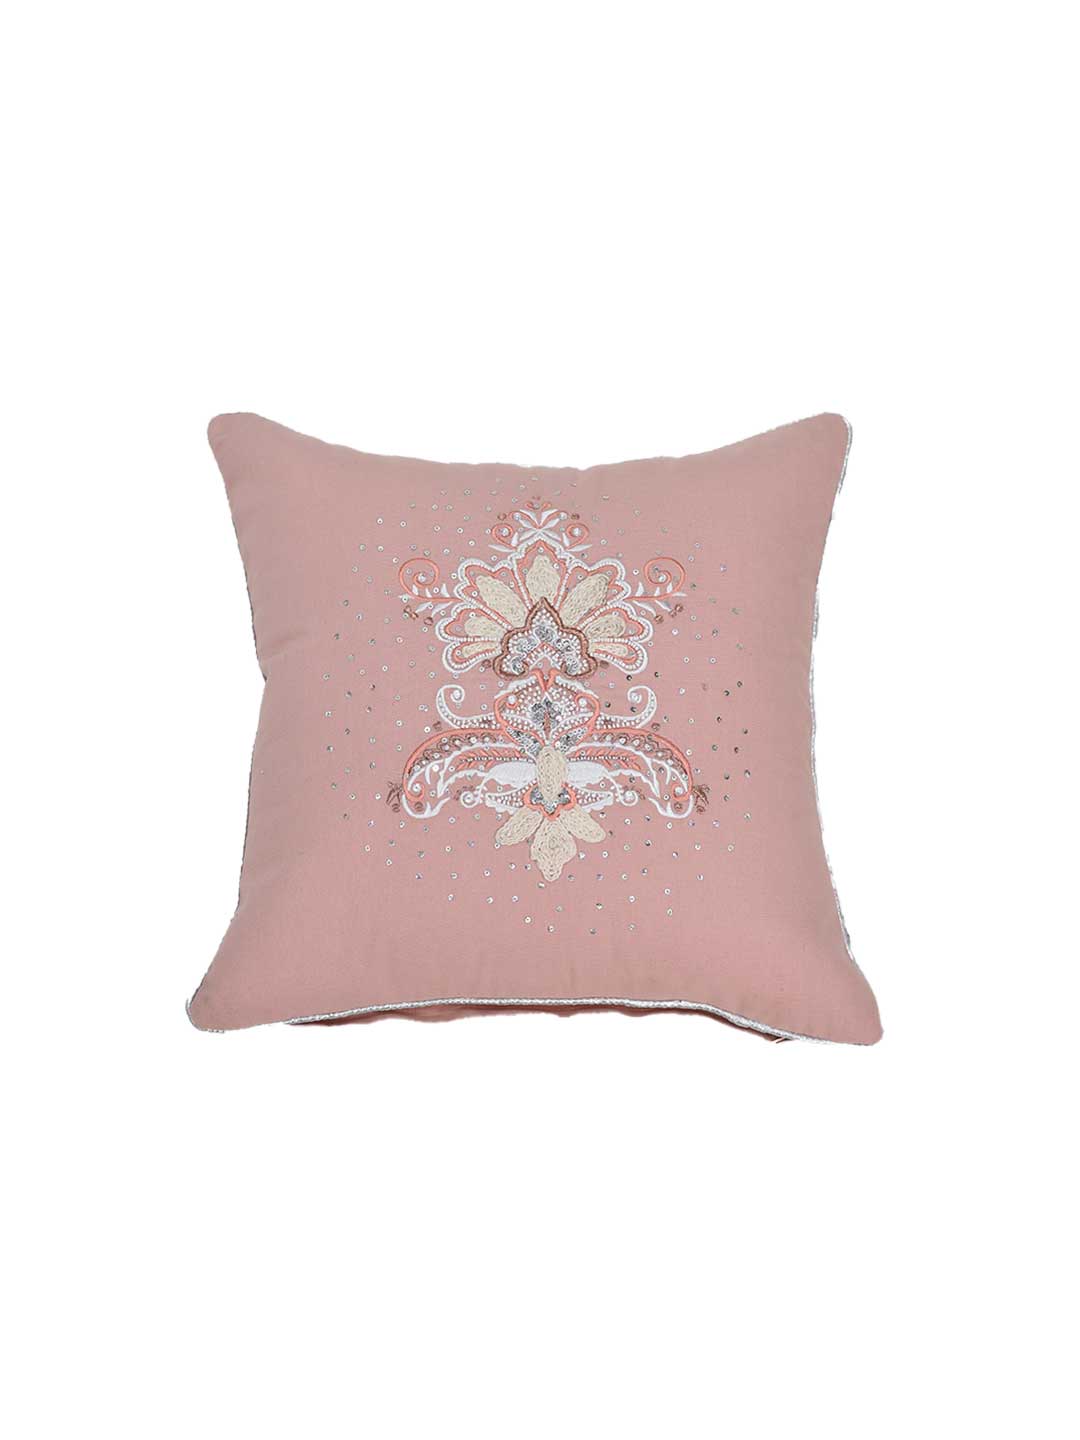 Rose Damask Cushion Cover